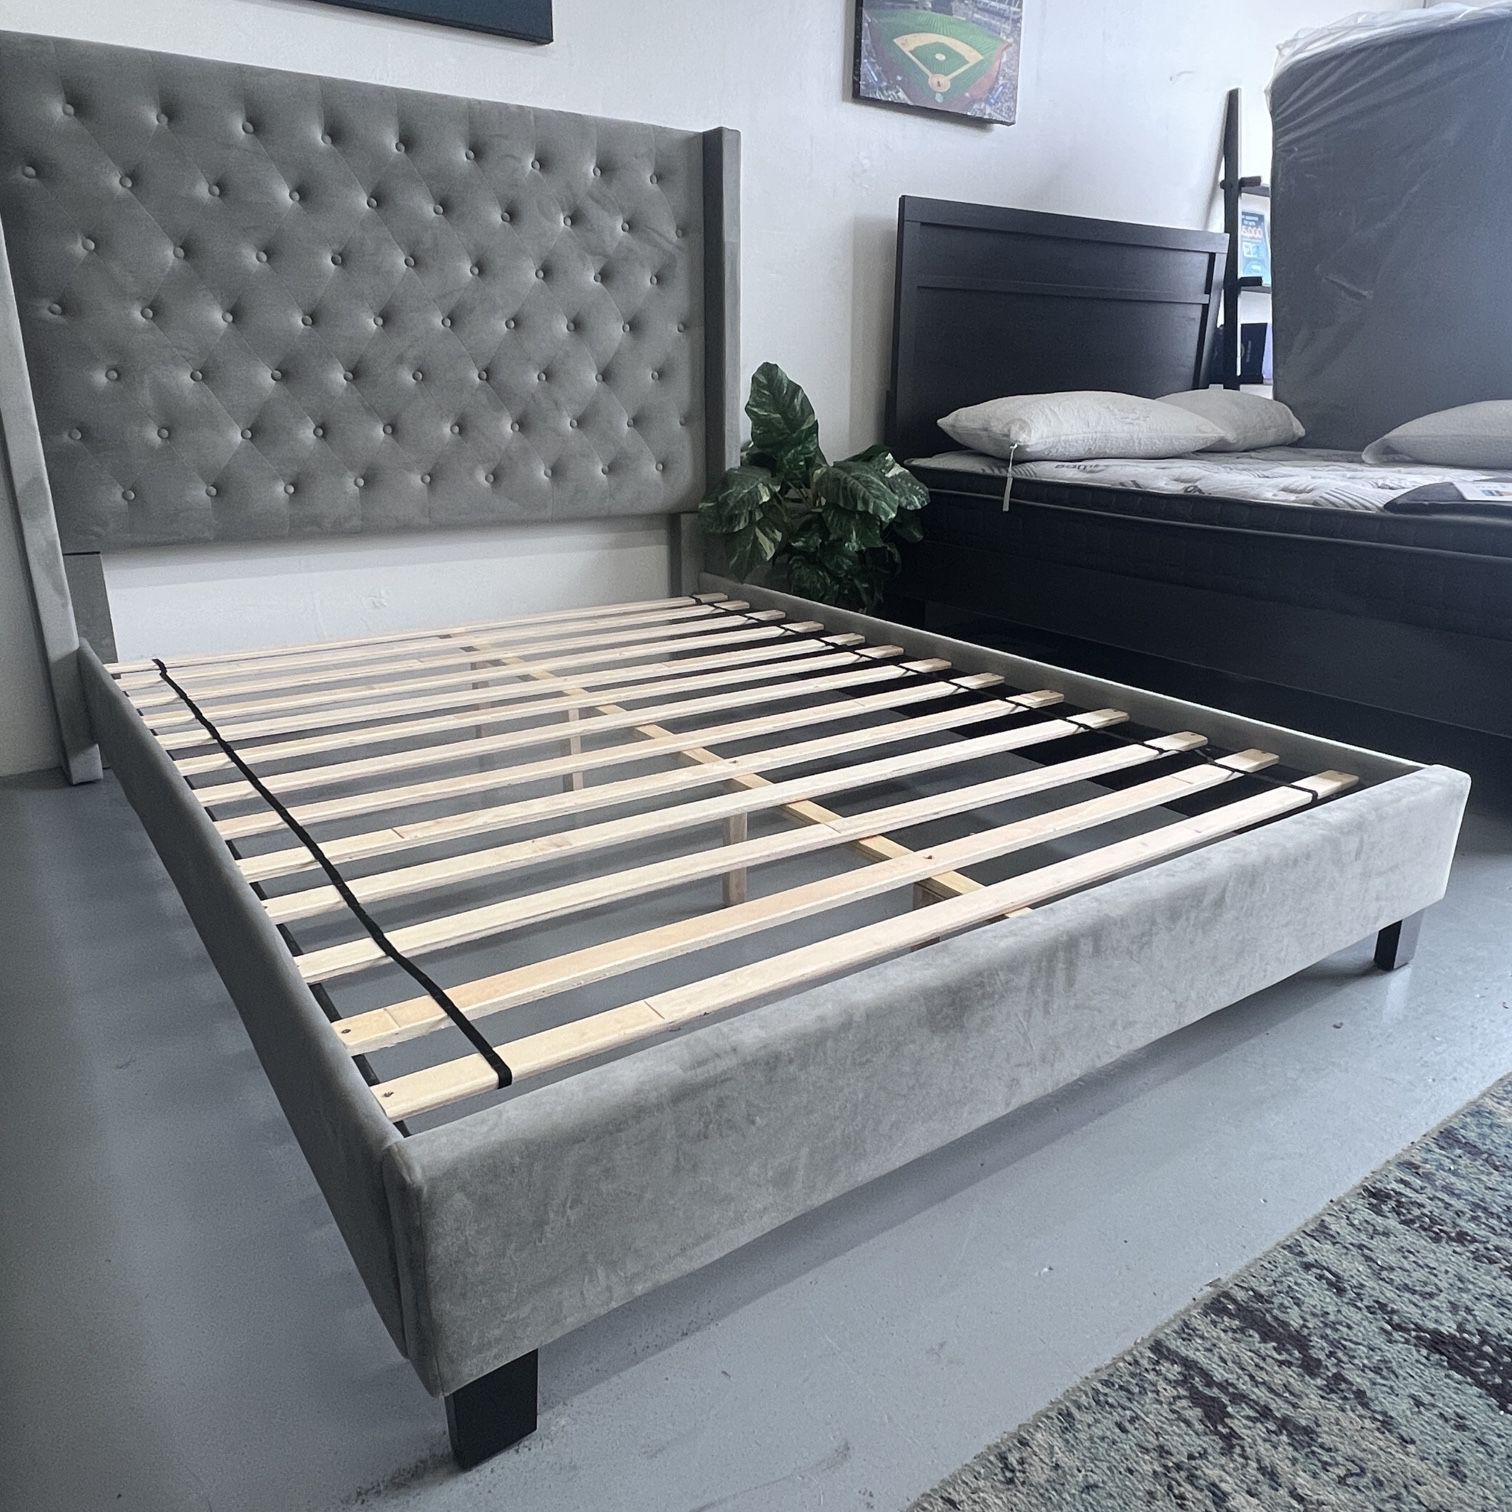 Retro Velvet Designer Bed Brand New Platform Bed frame Grey or Grey Black Cal or King $388 Queen $288